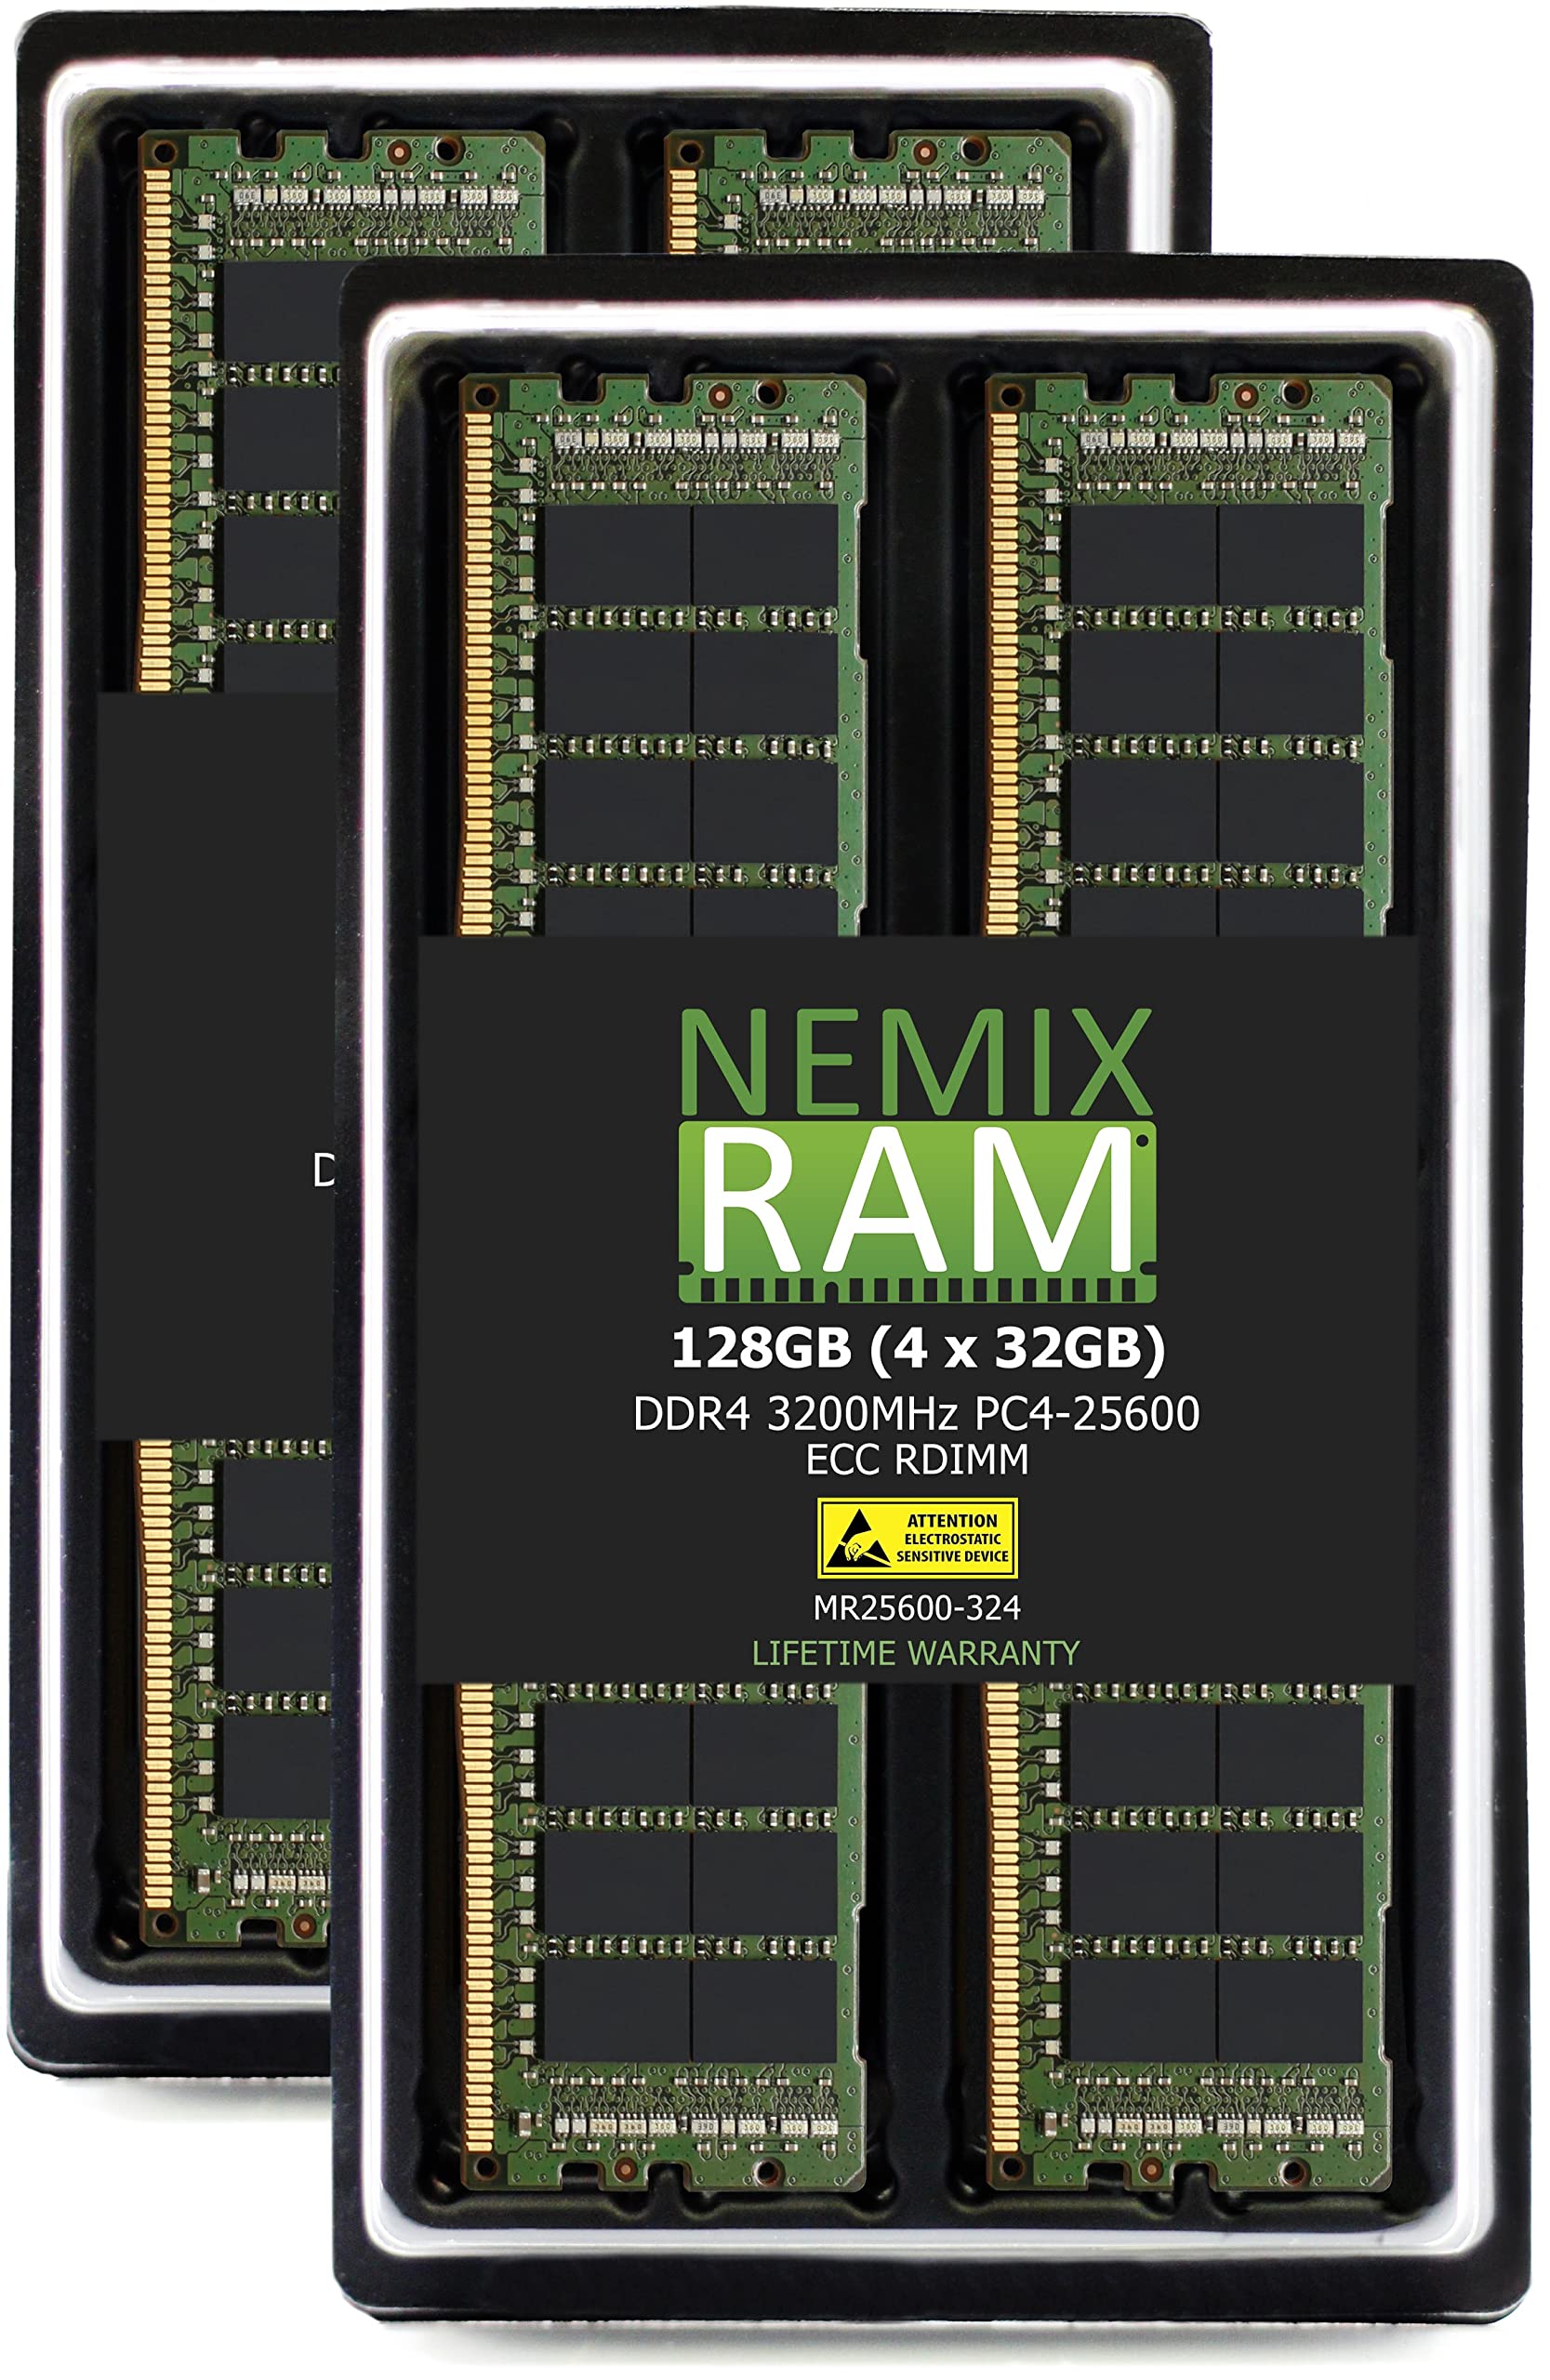 NEMIX RAM 128GB 4x32GB DDR4-3200 PC4-25600 ECC RDIMM レジスタードサーバーメモリアップグレード Dell Powe